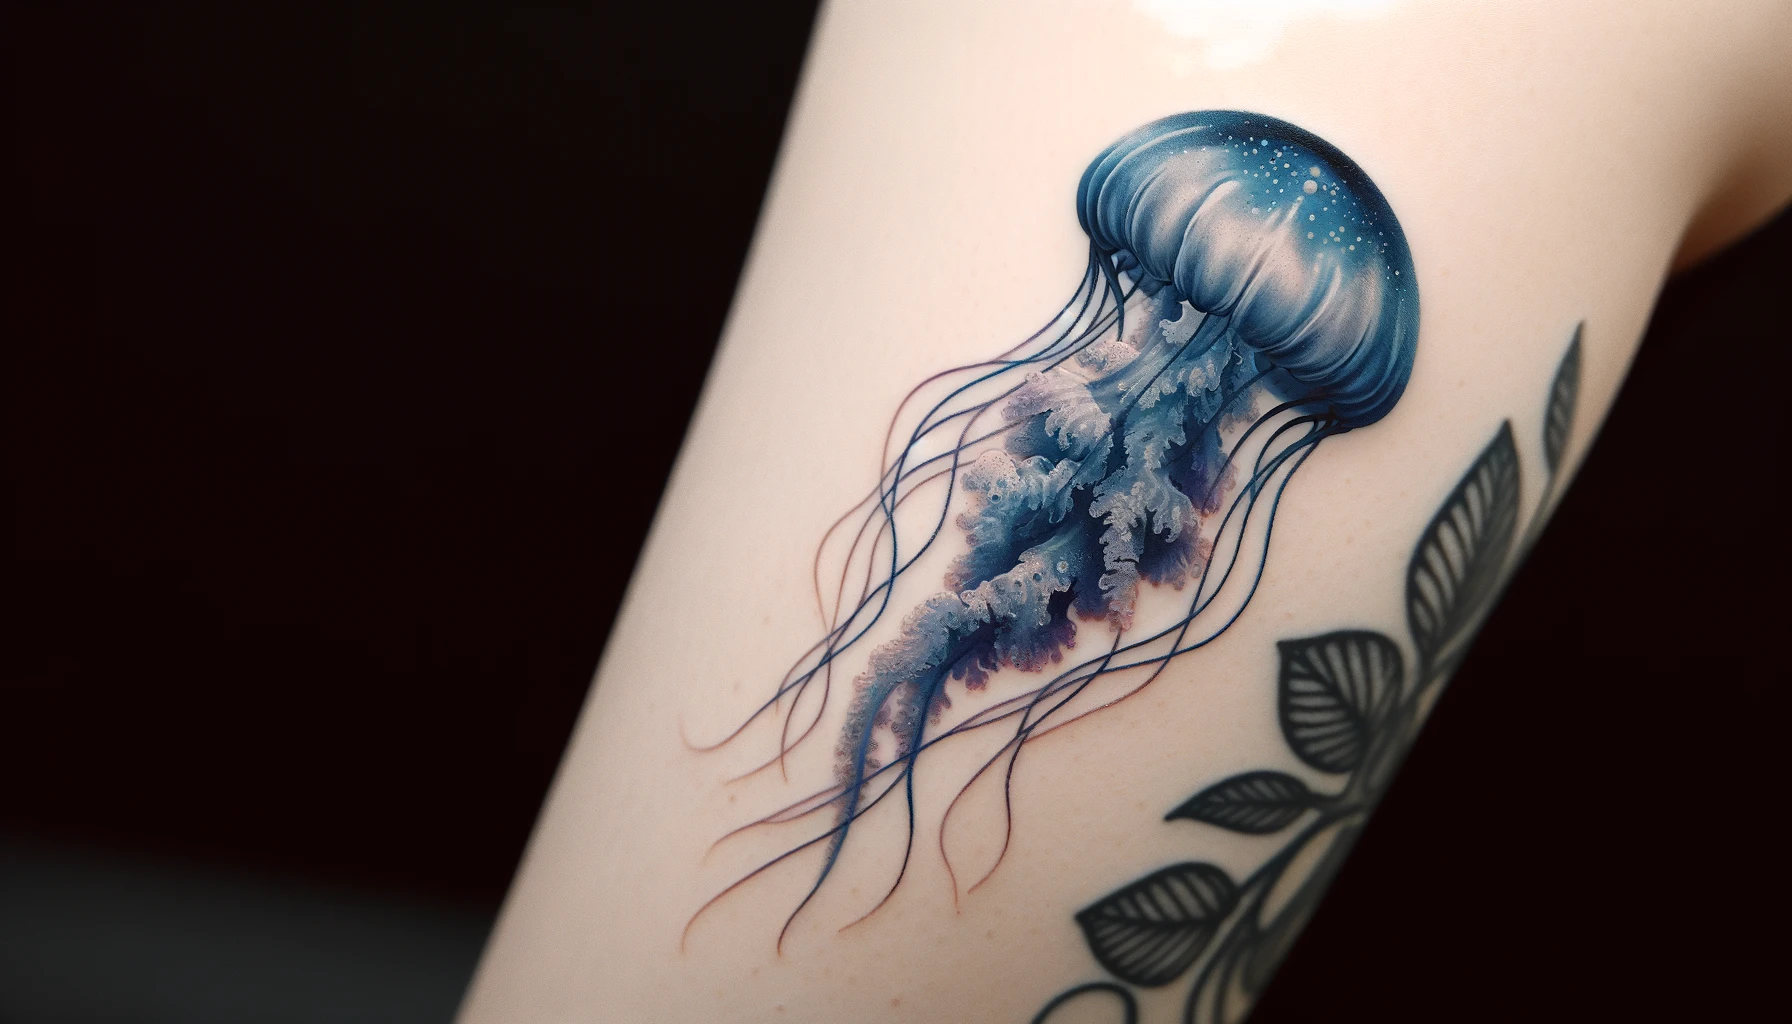 Tatuaż przedstawia delikatną meduzę z płynnymi, misternymi liniami macków i gradientem odcieni od błękitu do fioletu. Kontrastujące barwy i delikatne detale wzoru tworzą wrażenie lekkości i subtelności